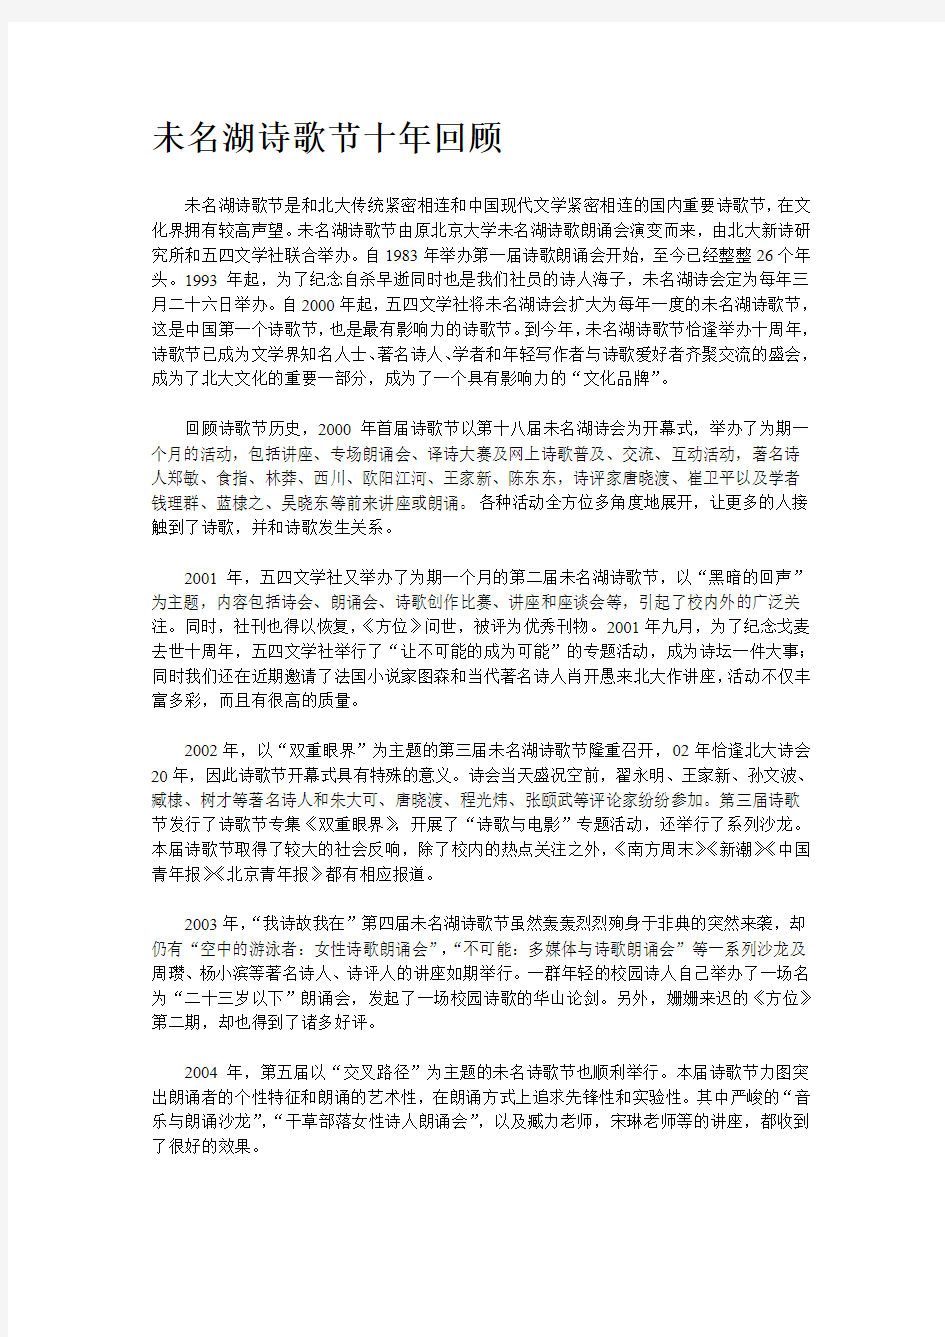 未名诗歌节十年回顾-北大未名BBS-北京大学